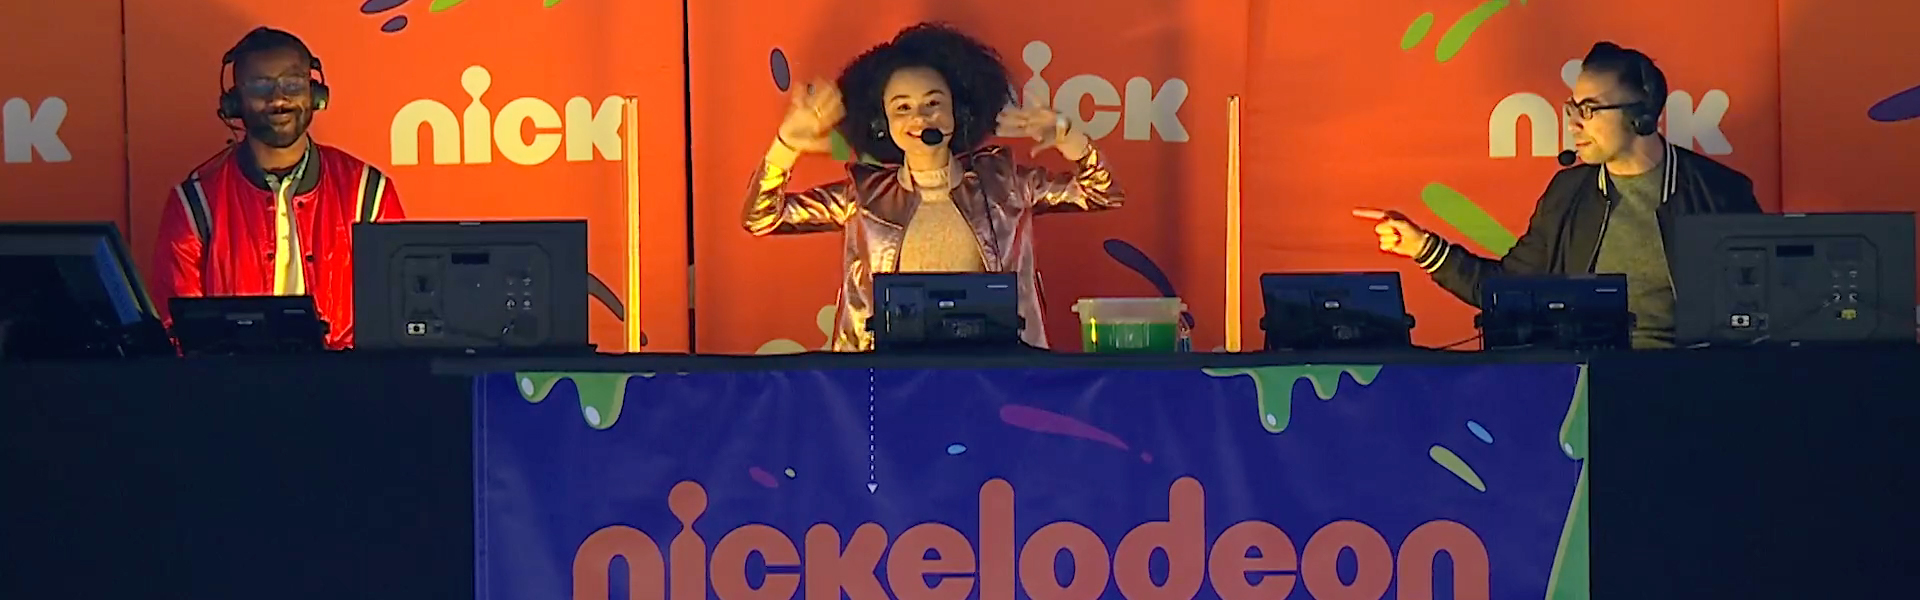 Nickelodeon estreia game show apresentado por Lívia Inhudes